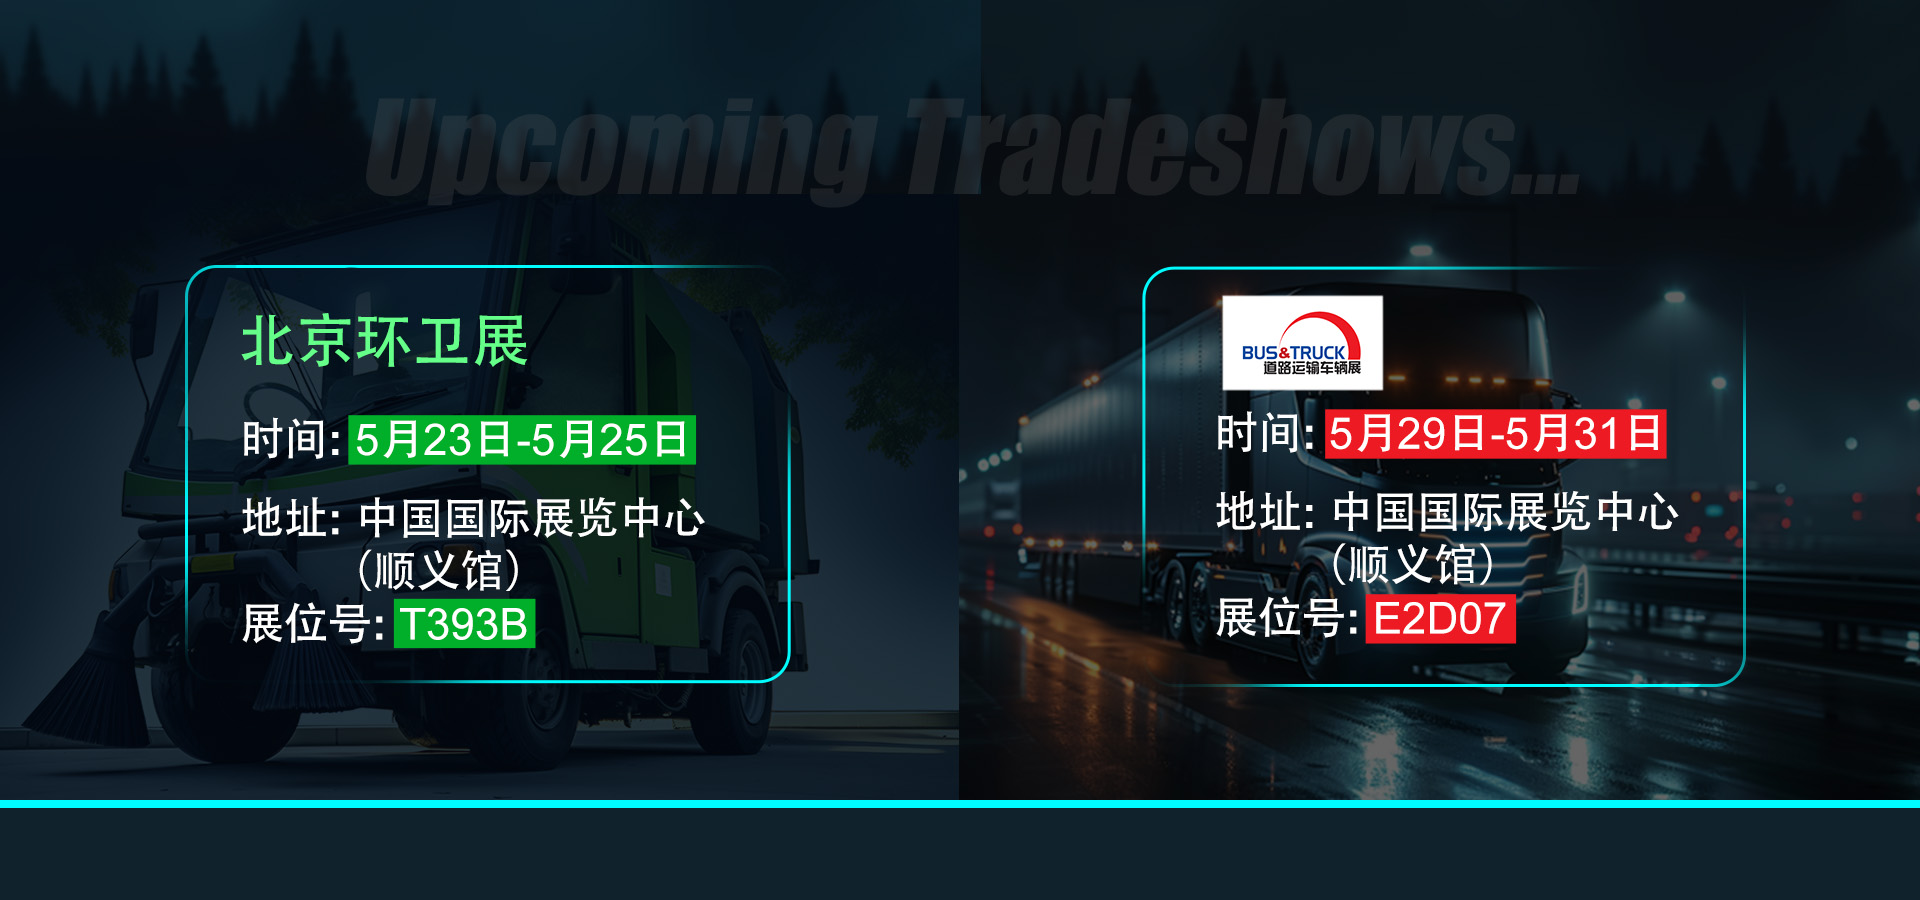 开幕在即，敏视邀您共赴北京环卫展与Bus&Truck展！